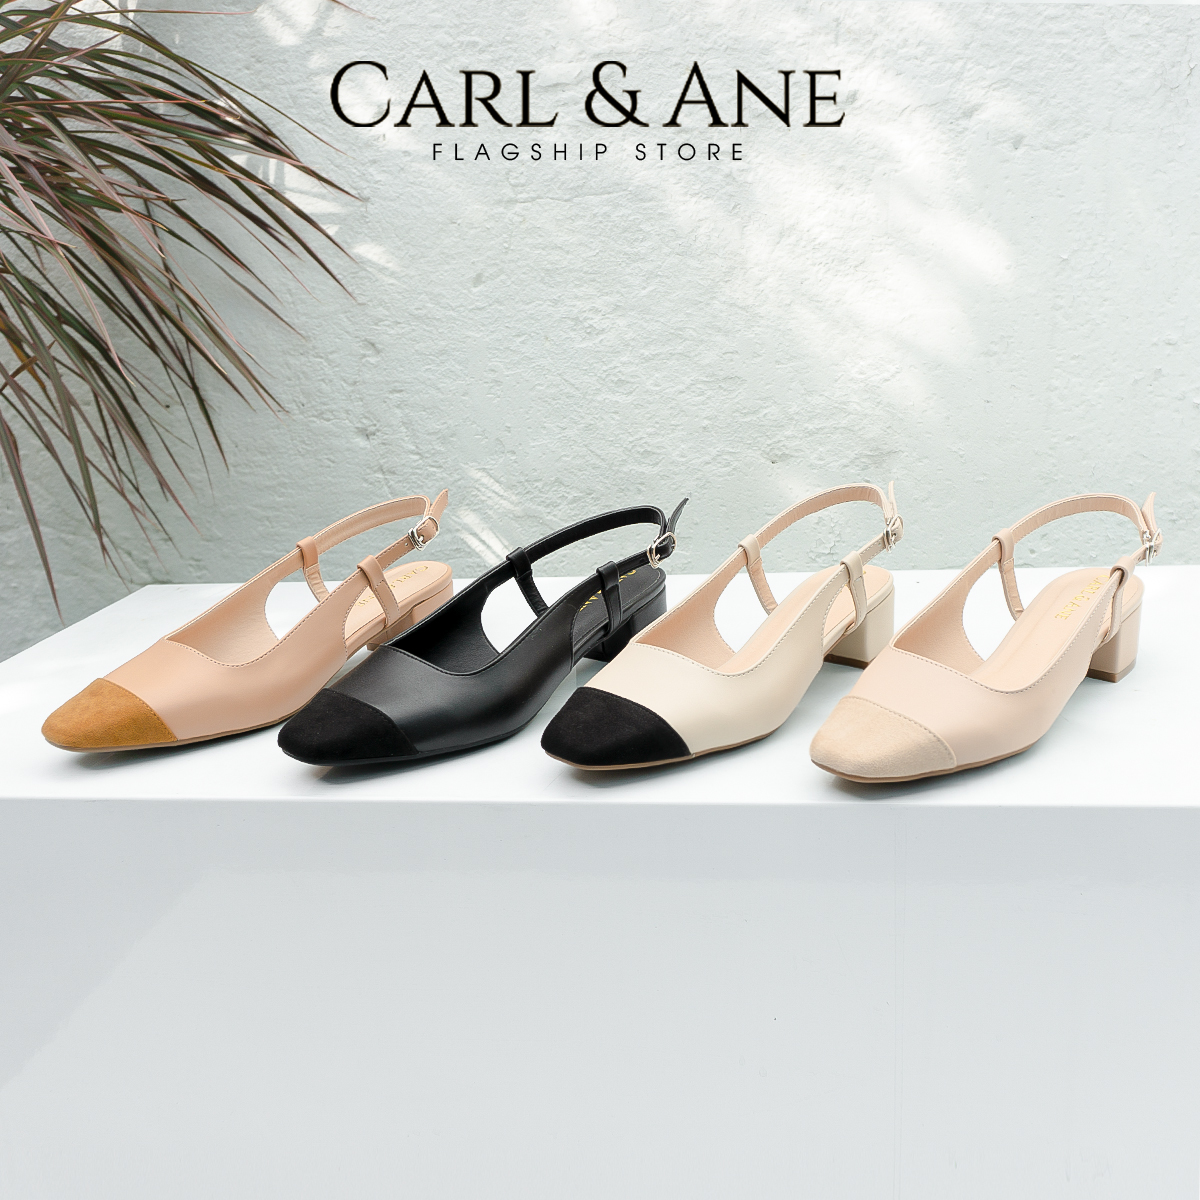 Carl & Ane - Giày cao gót bít mũi kiểu dáng Hàn Quốc phối màu cao 4cm màu đen  - CL020